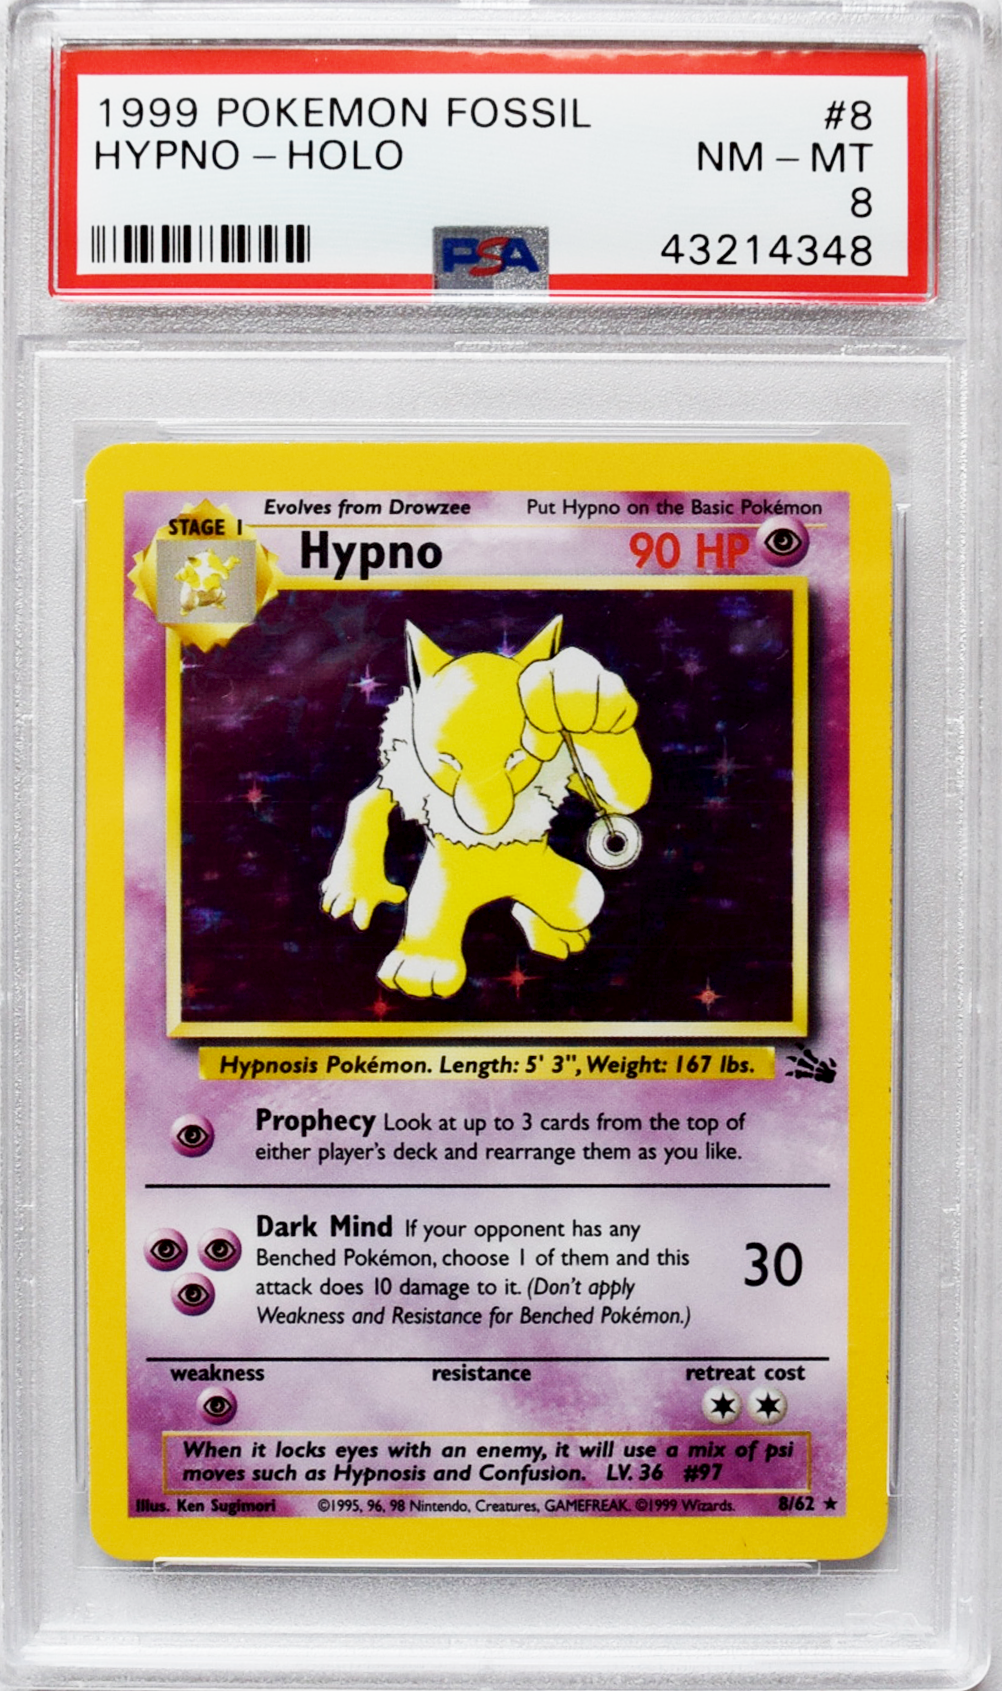 Fosil Pokemon 1999 | Hypno (#8) - Holo | PSA 8 NM-MT